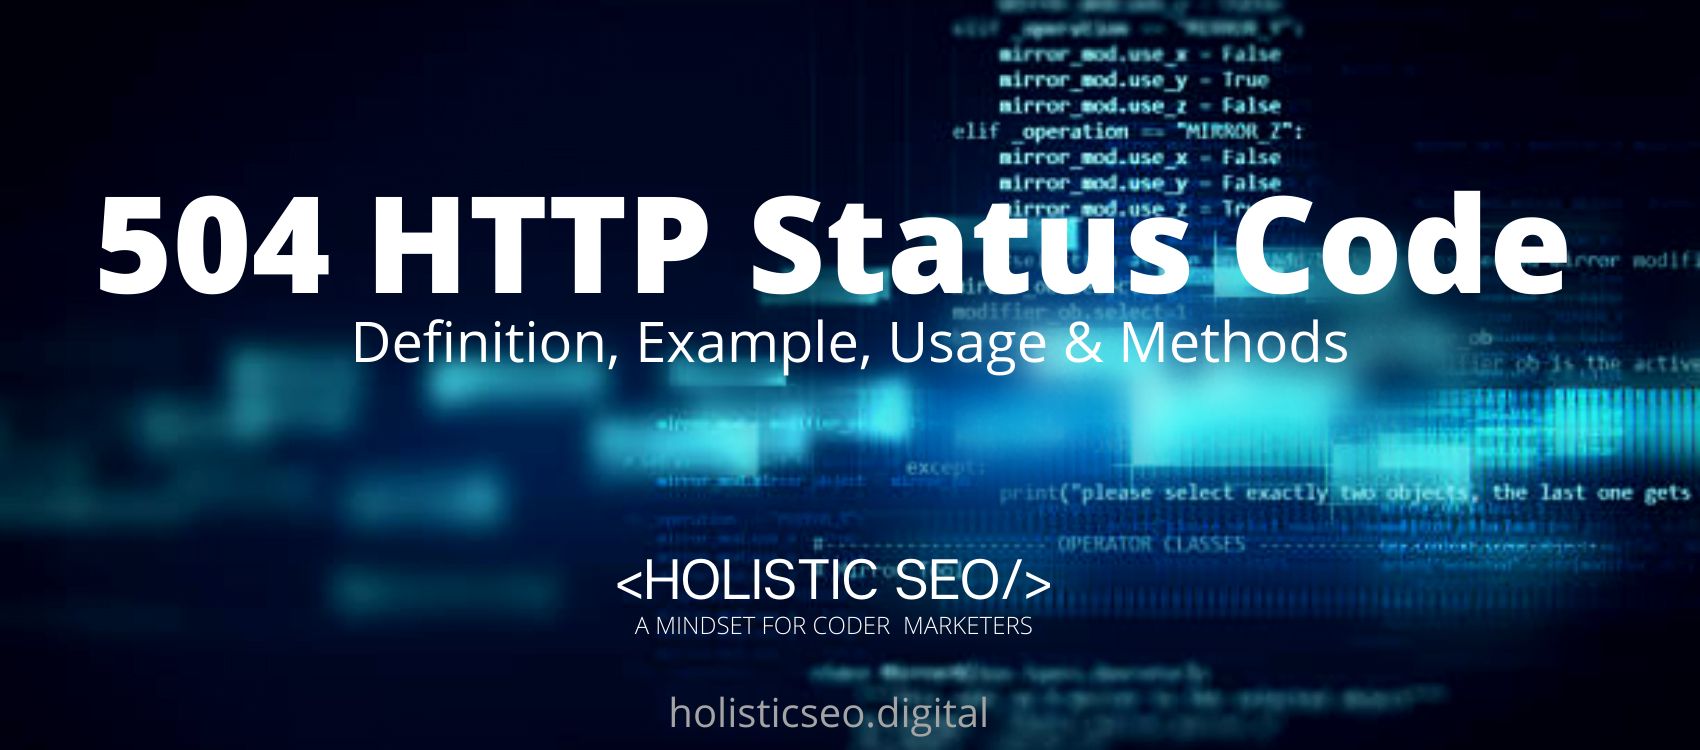 504 HTTP Status Code